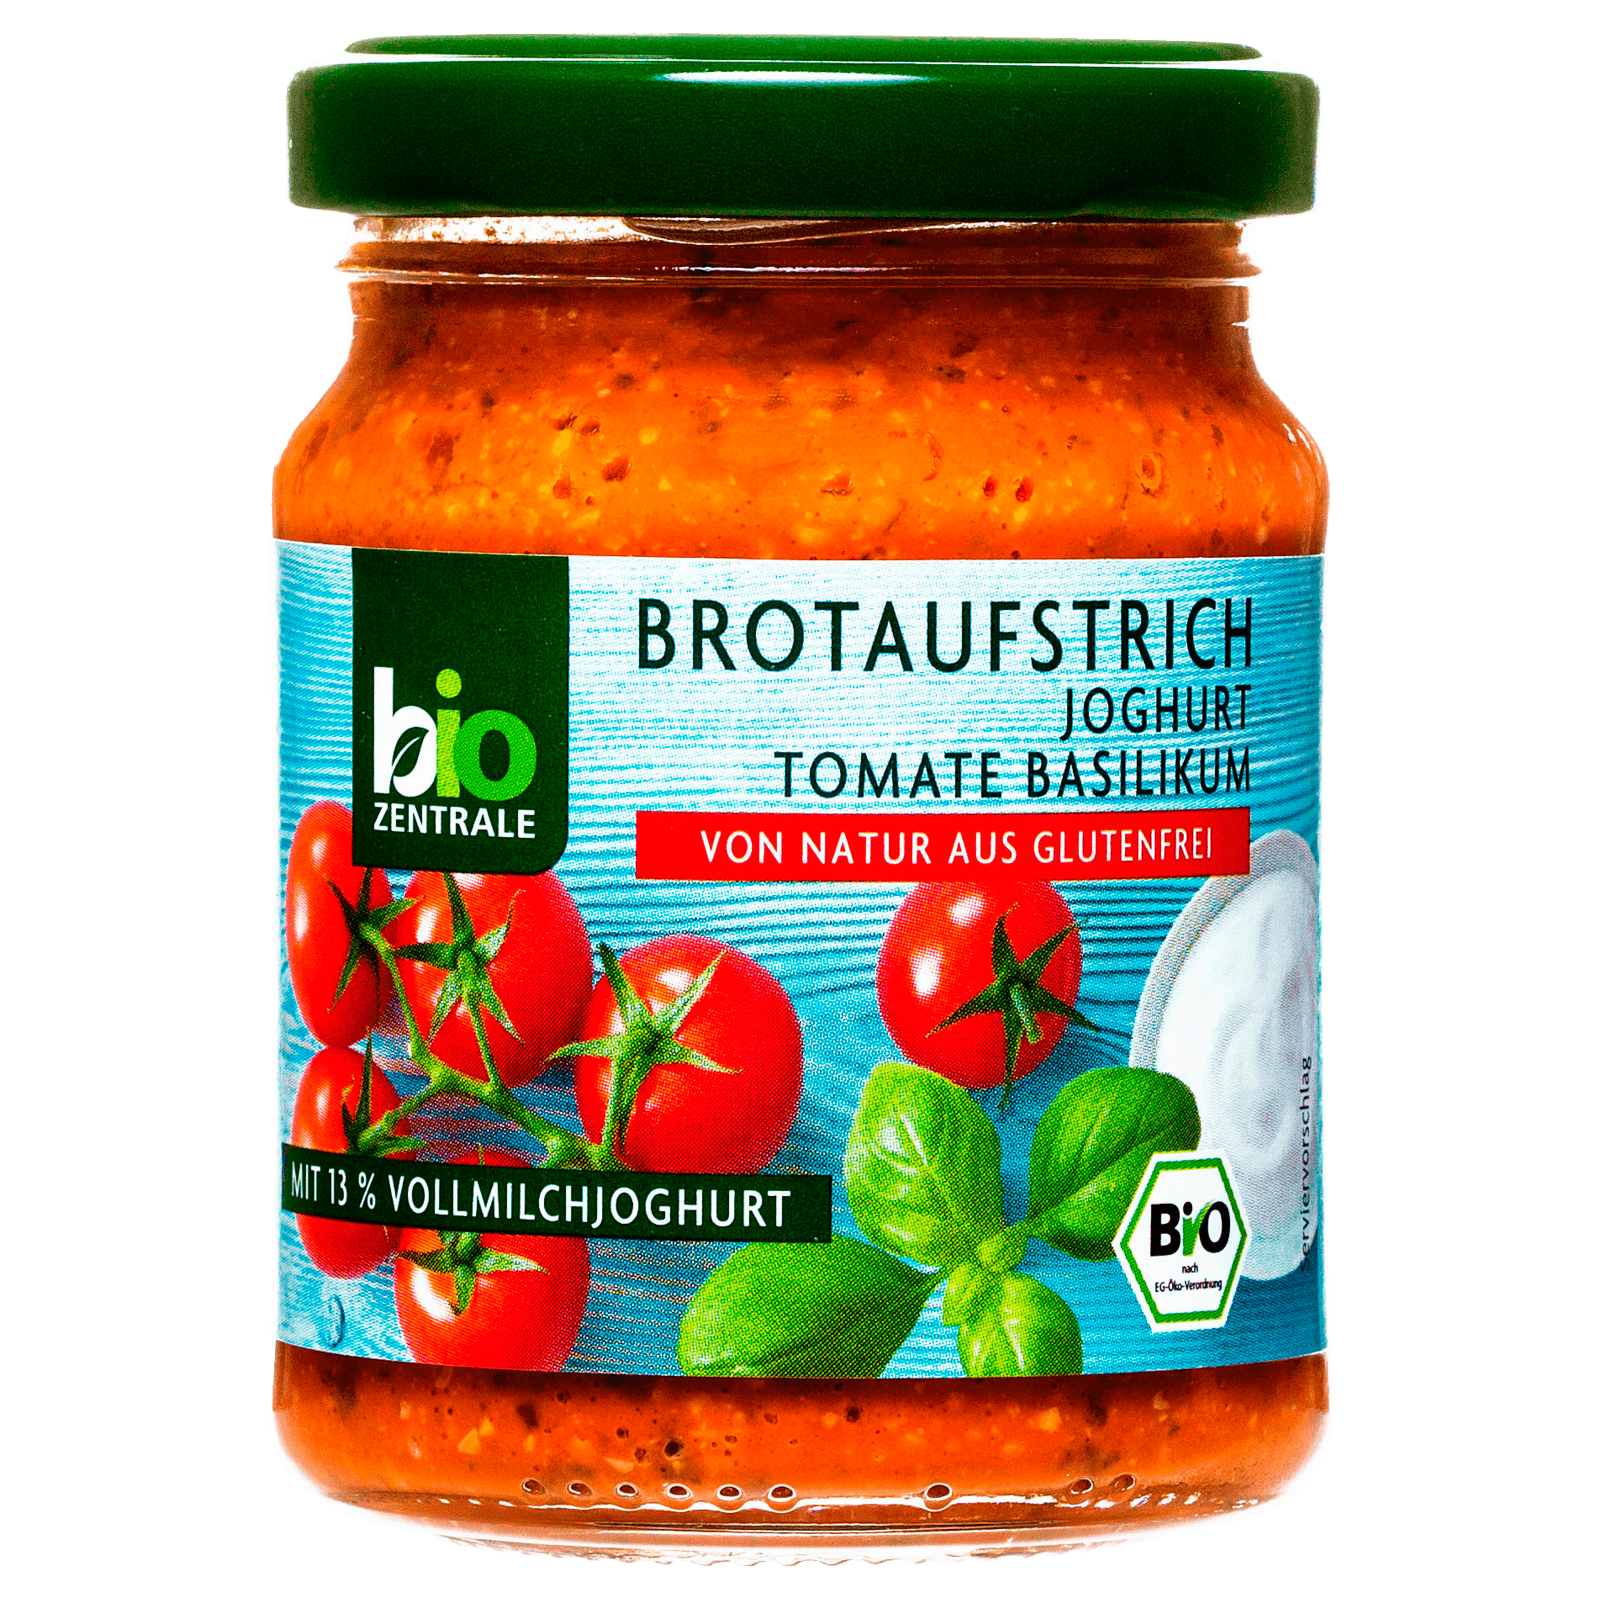 Bio Zentrale Brotaufstrich Joghurt Tomate-Basilikum 125g bei REWE ...